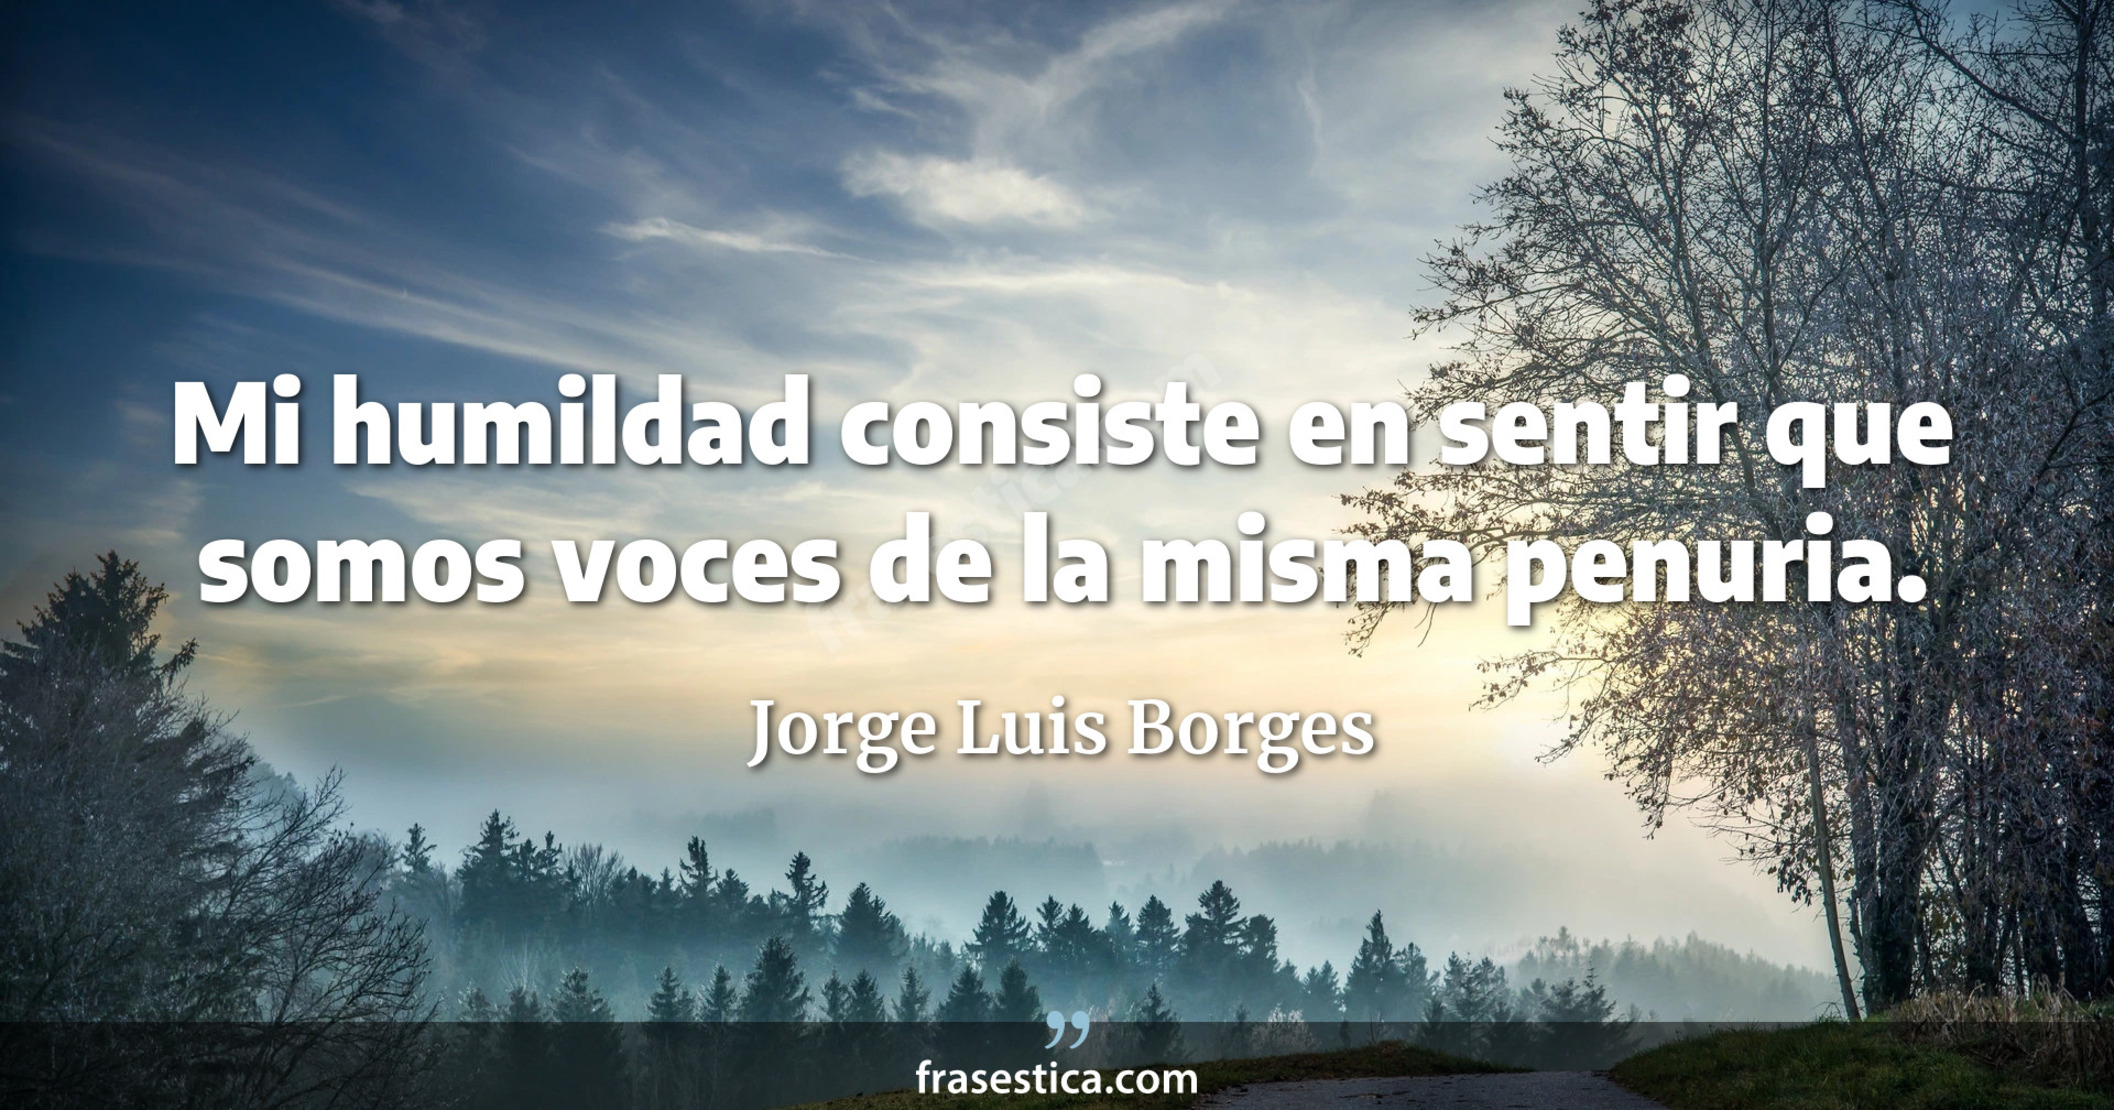 Mi humildad consiste en sentir que somos voces de la misma penuria. - Jorge Luis Borges